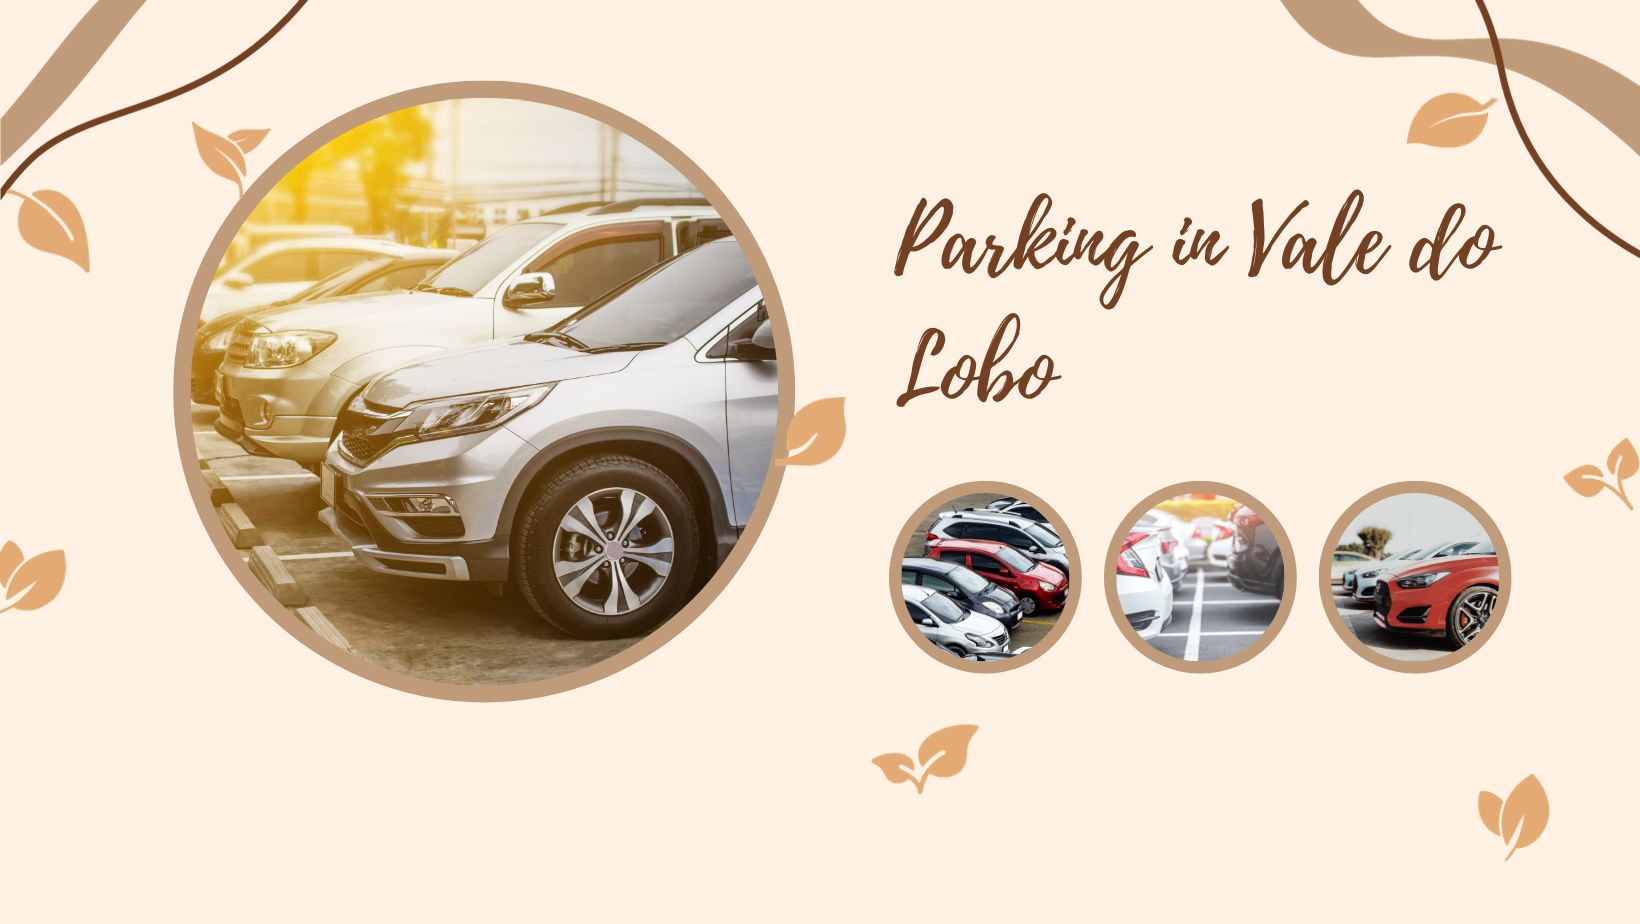 Parking in Vale do Lobo